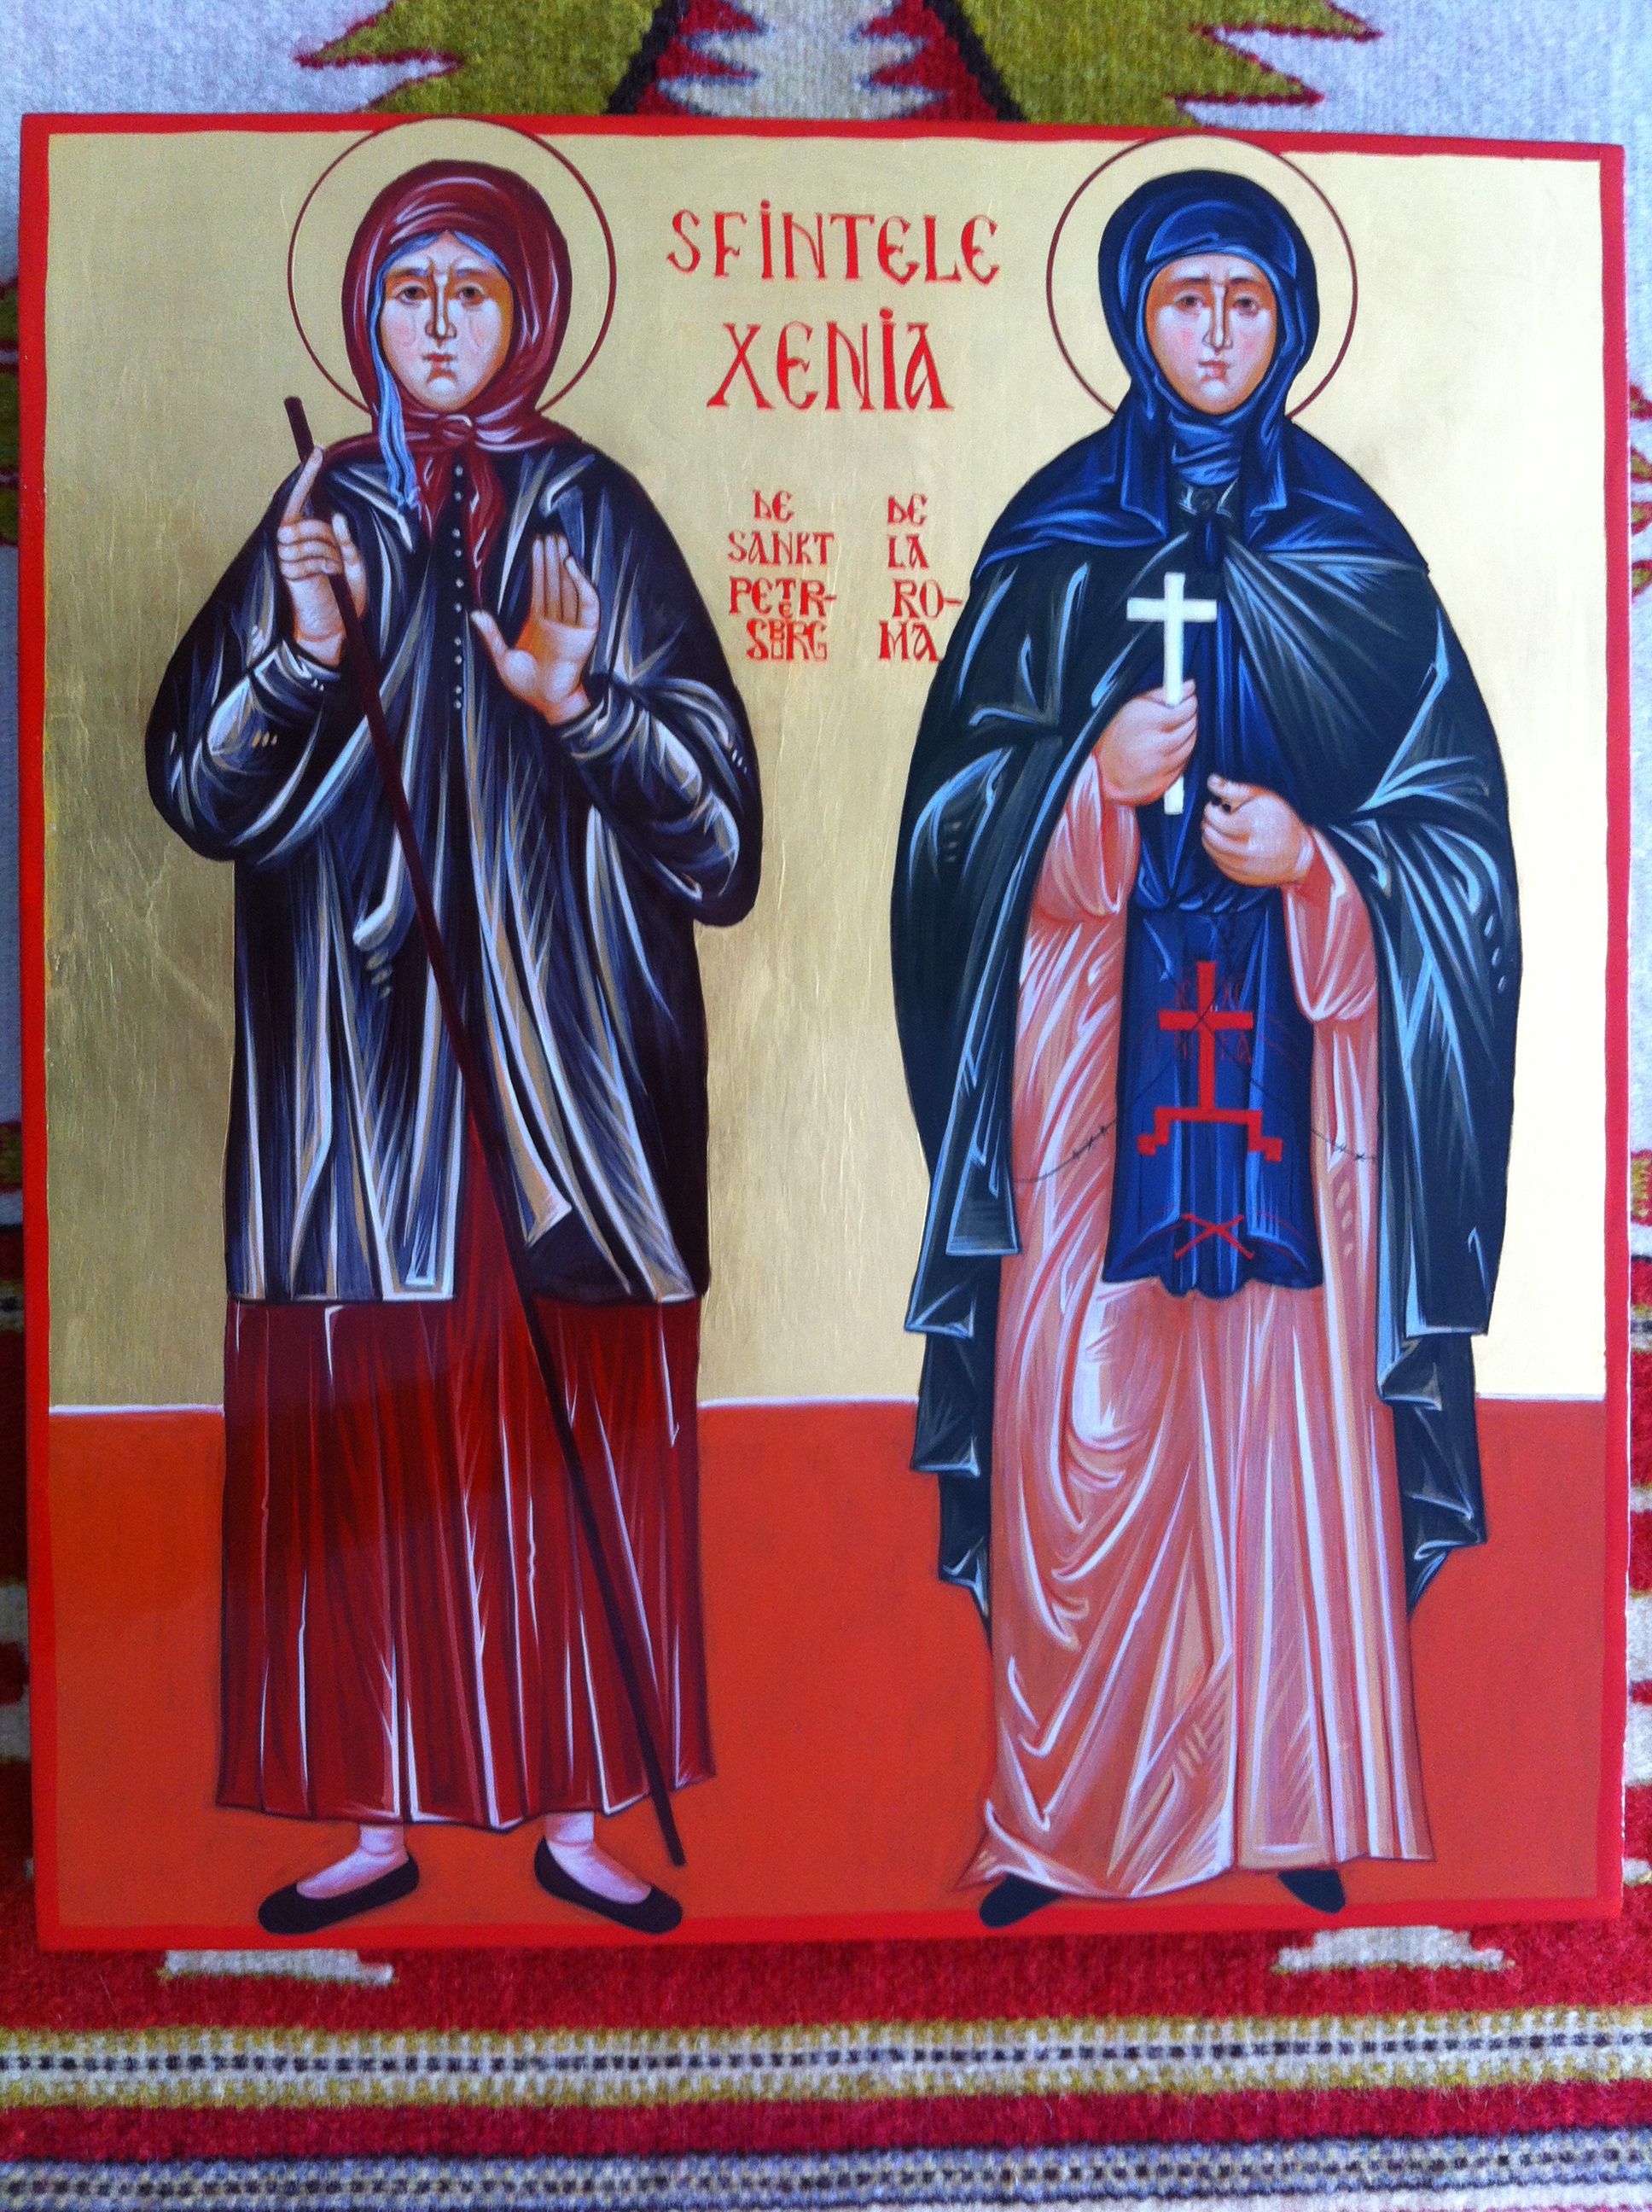 Saints Xenia/Sfintele Xenia